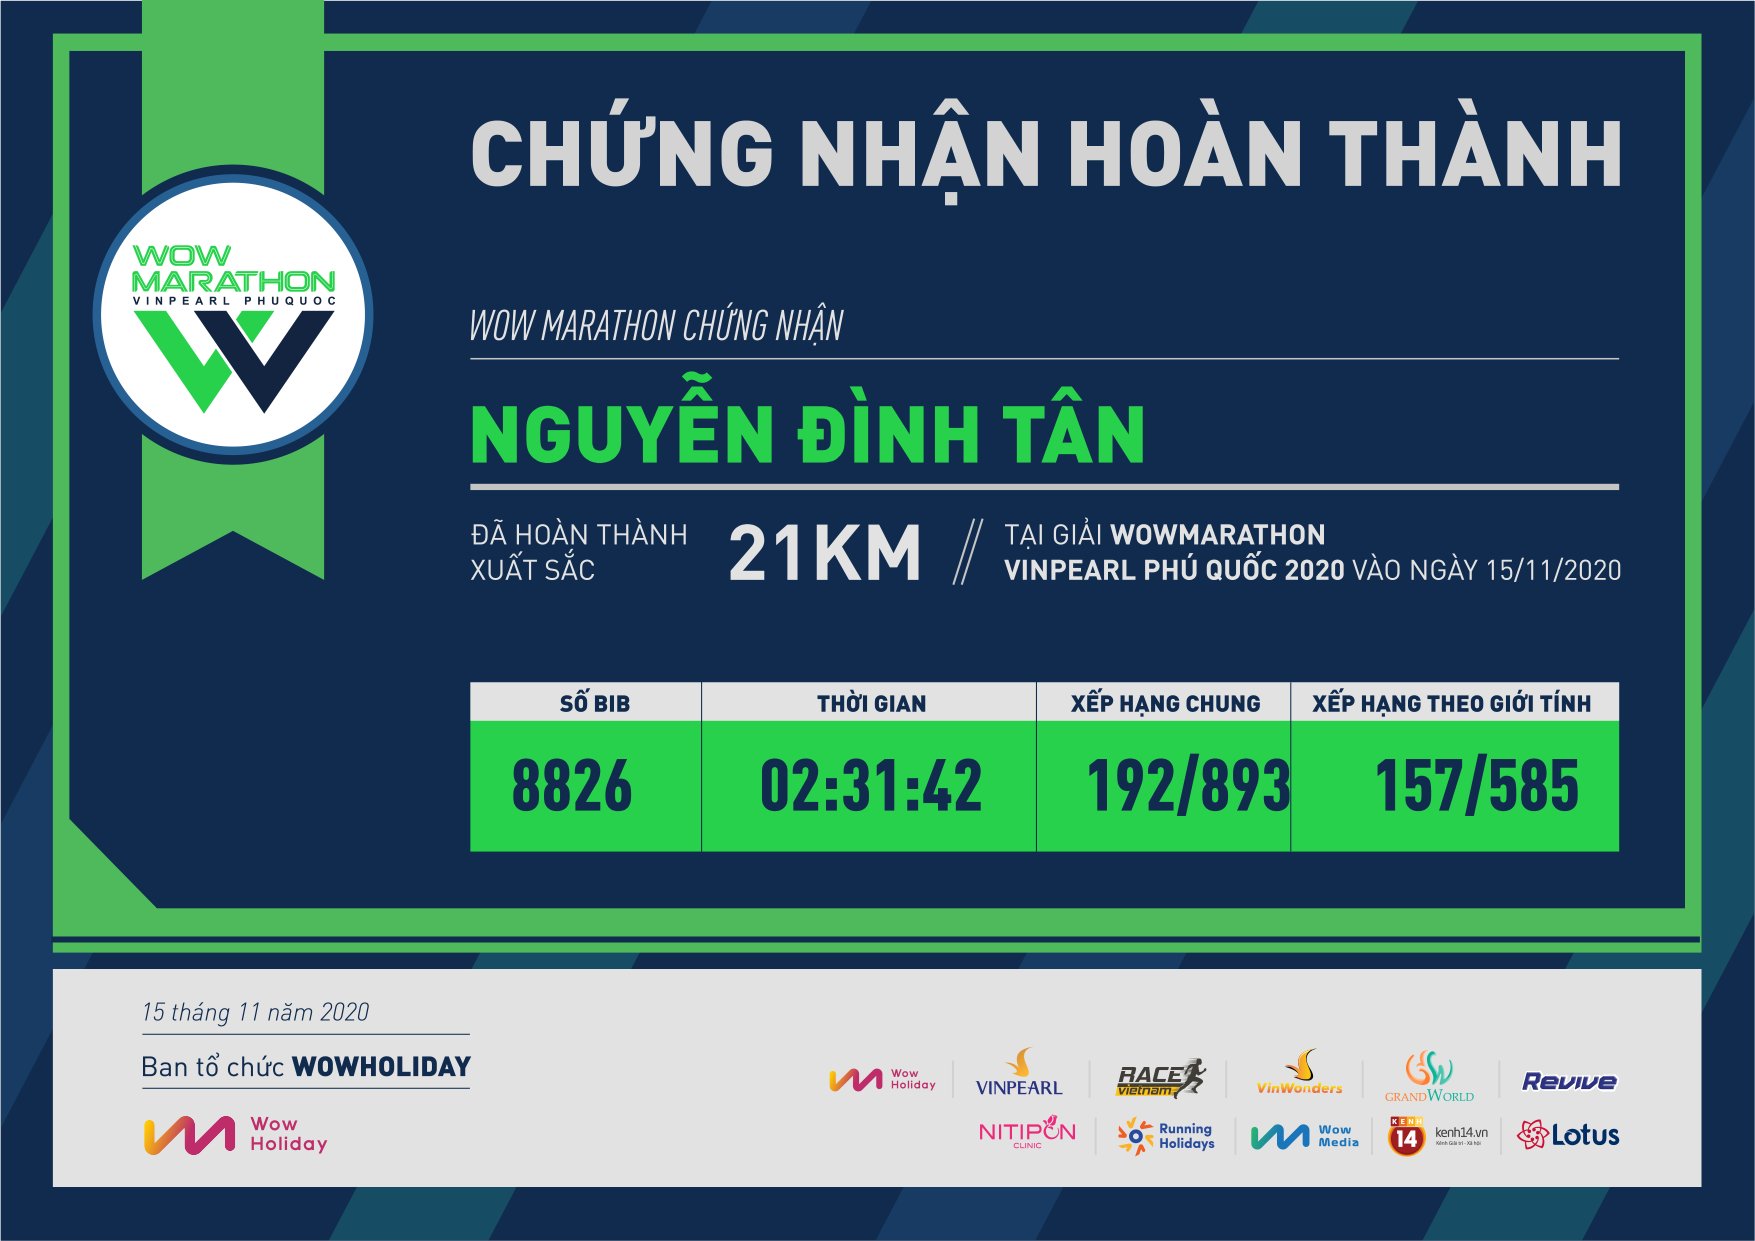 8826 - Nguyễn Đình Tân